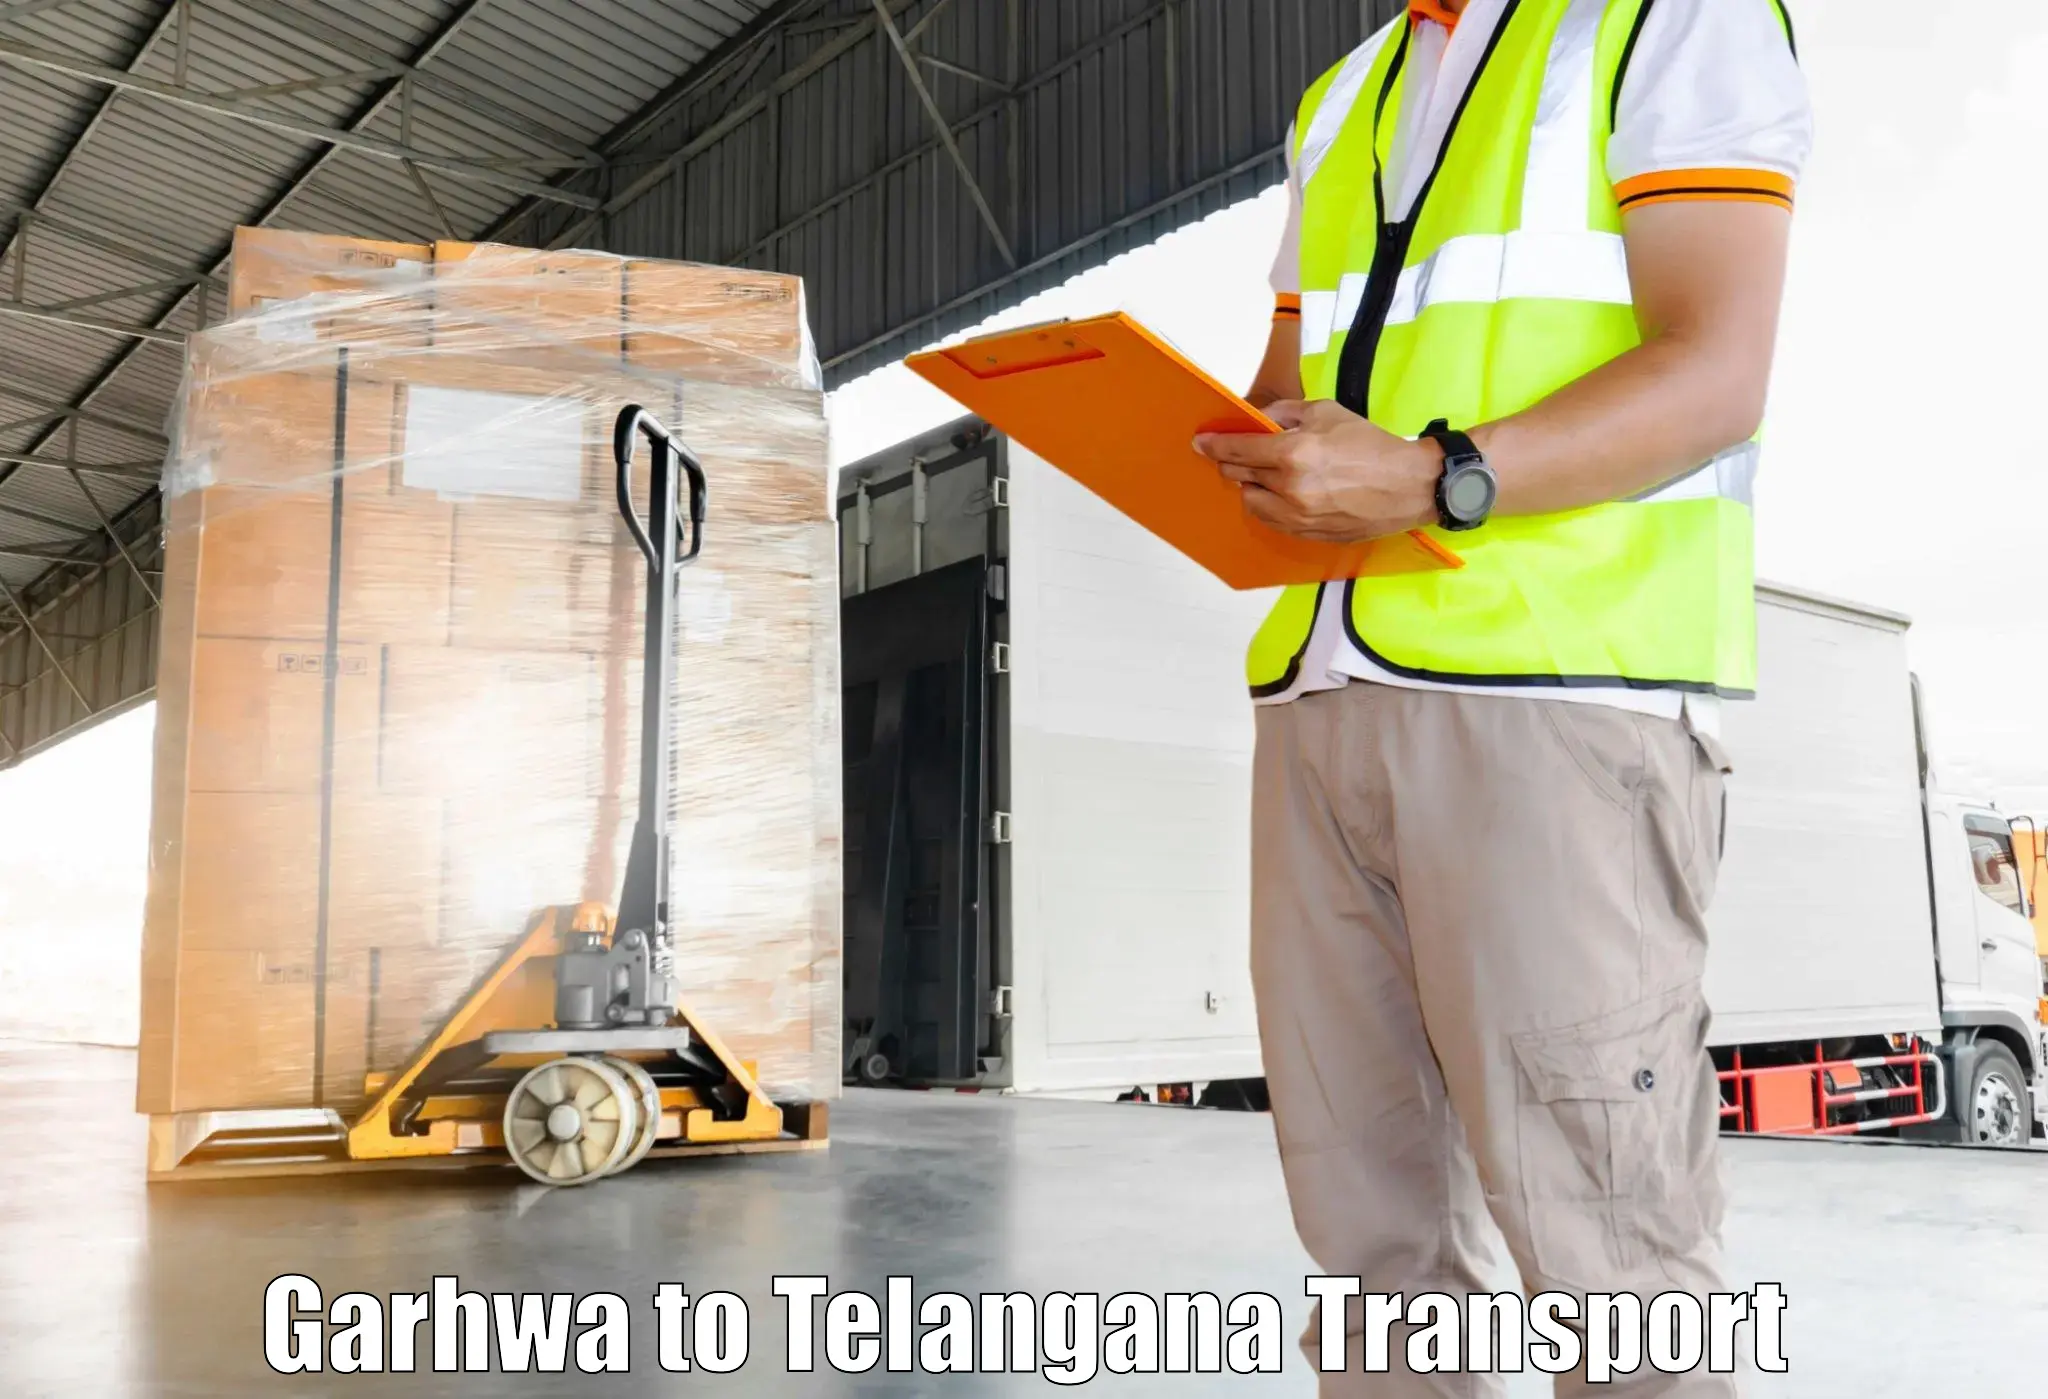 Furniture transport service Garhwa to Rudrangi